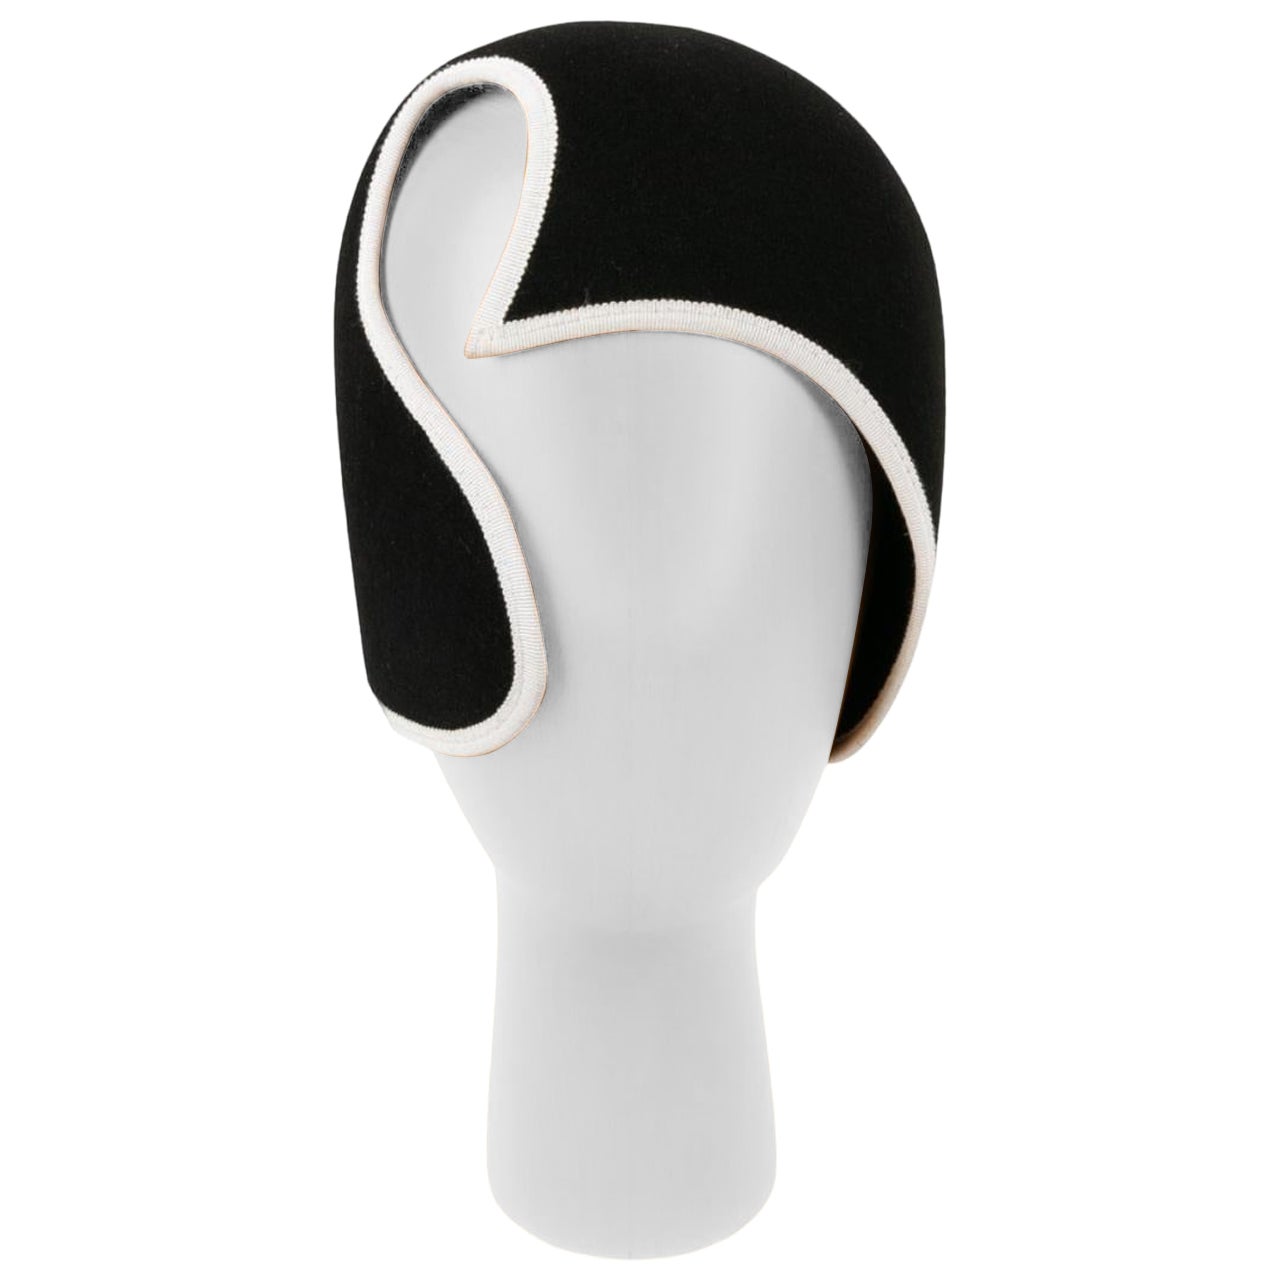 Kris Van Assche Hat in Black and White